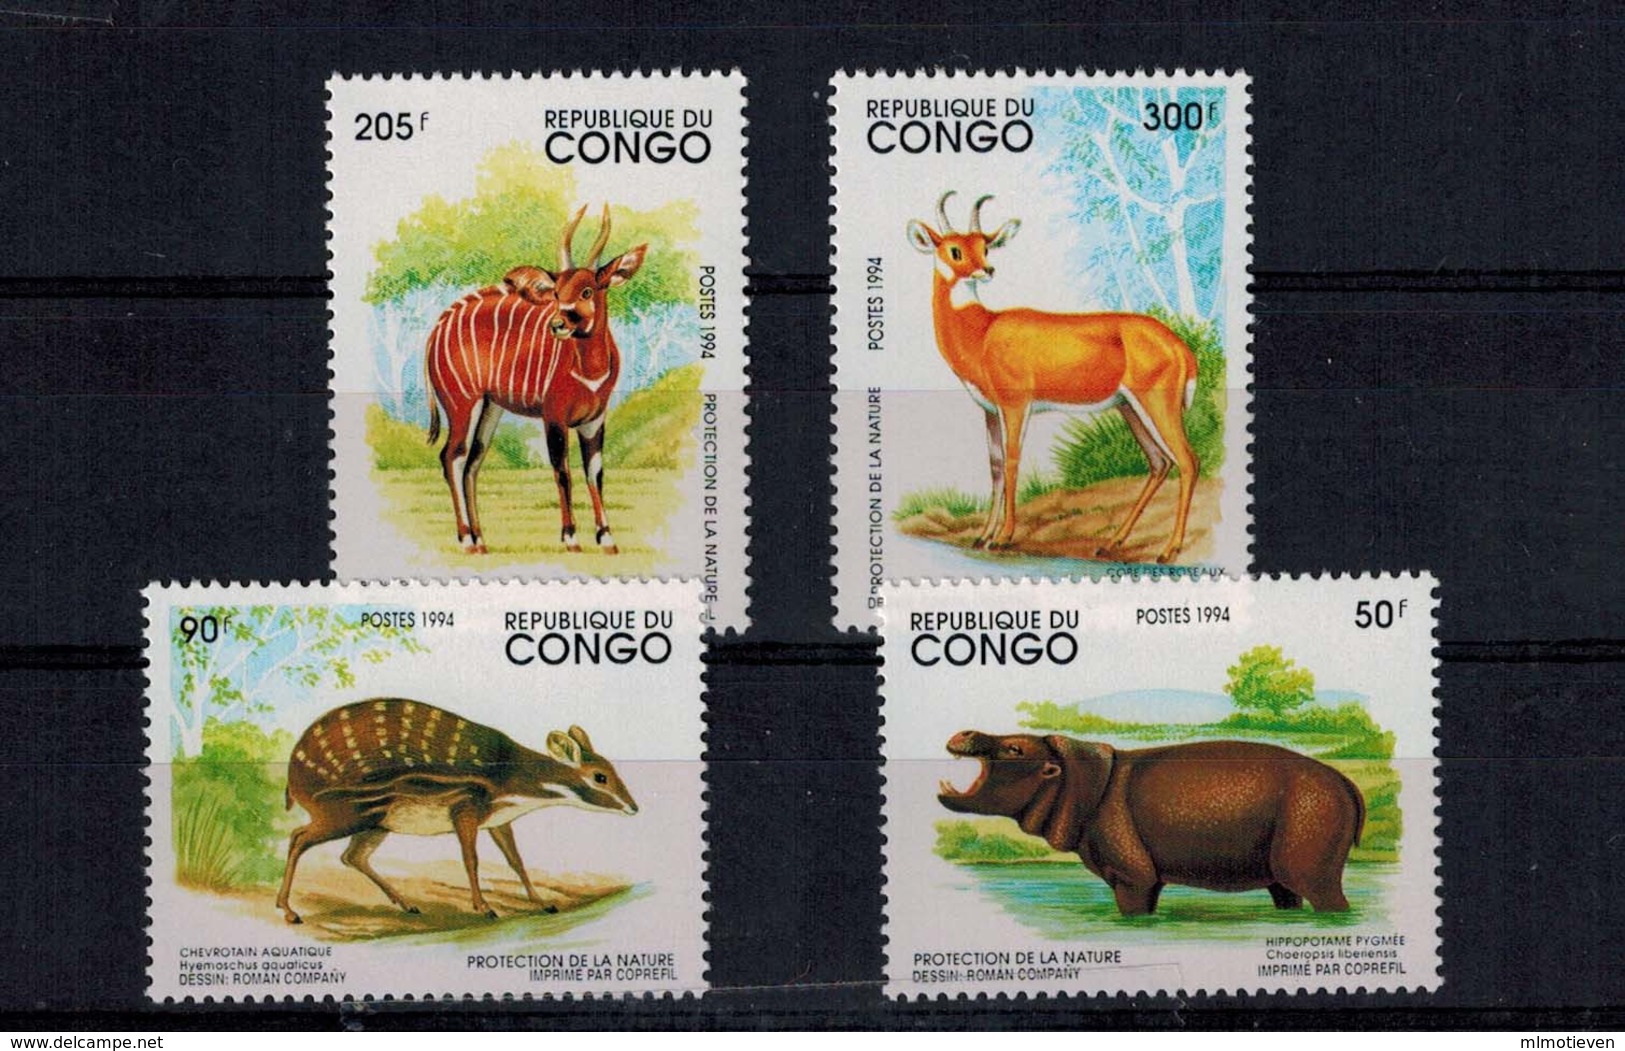 MDA -07102019_0009 MINT ¤ CONGO 1994 KOMPL. SETS ¤ ANIMALS OF THE WORLD - WILDE DIEREN - Gibier